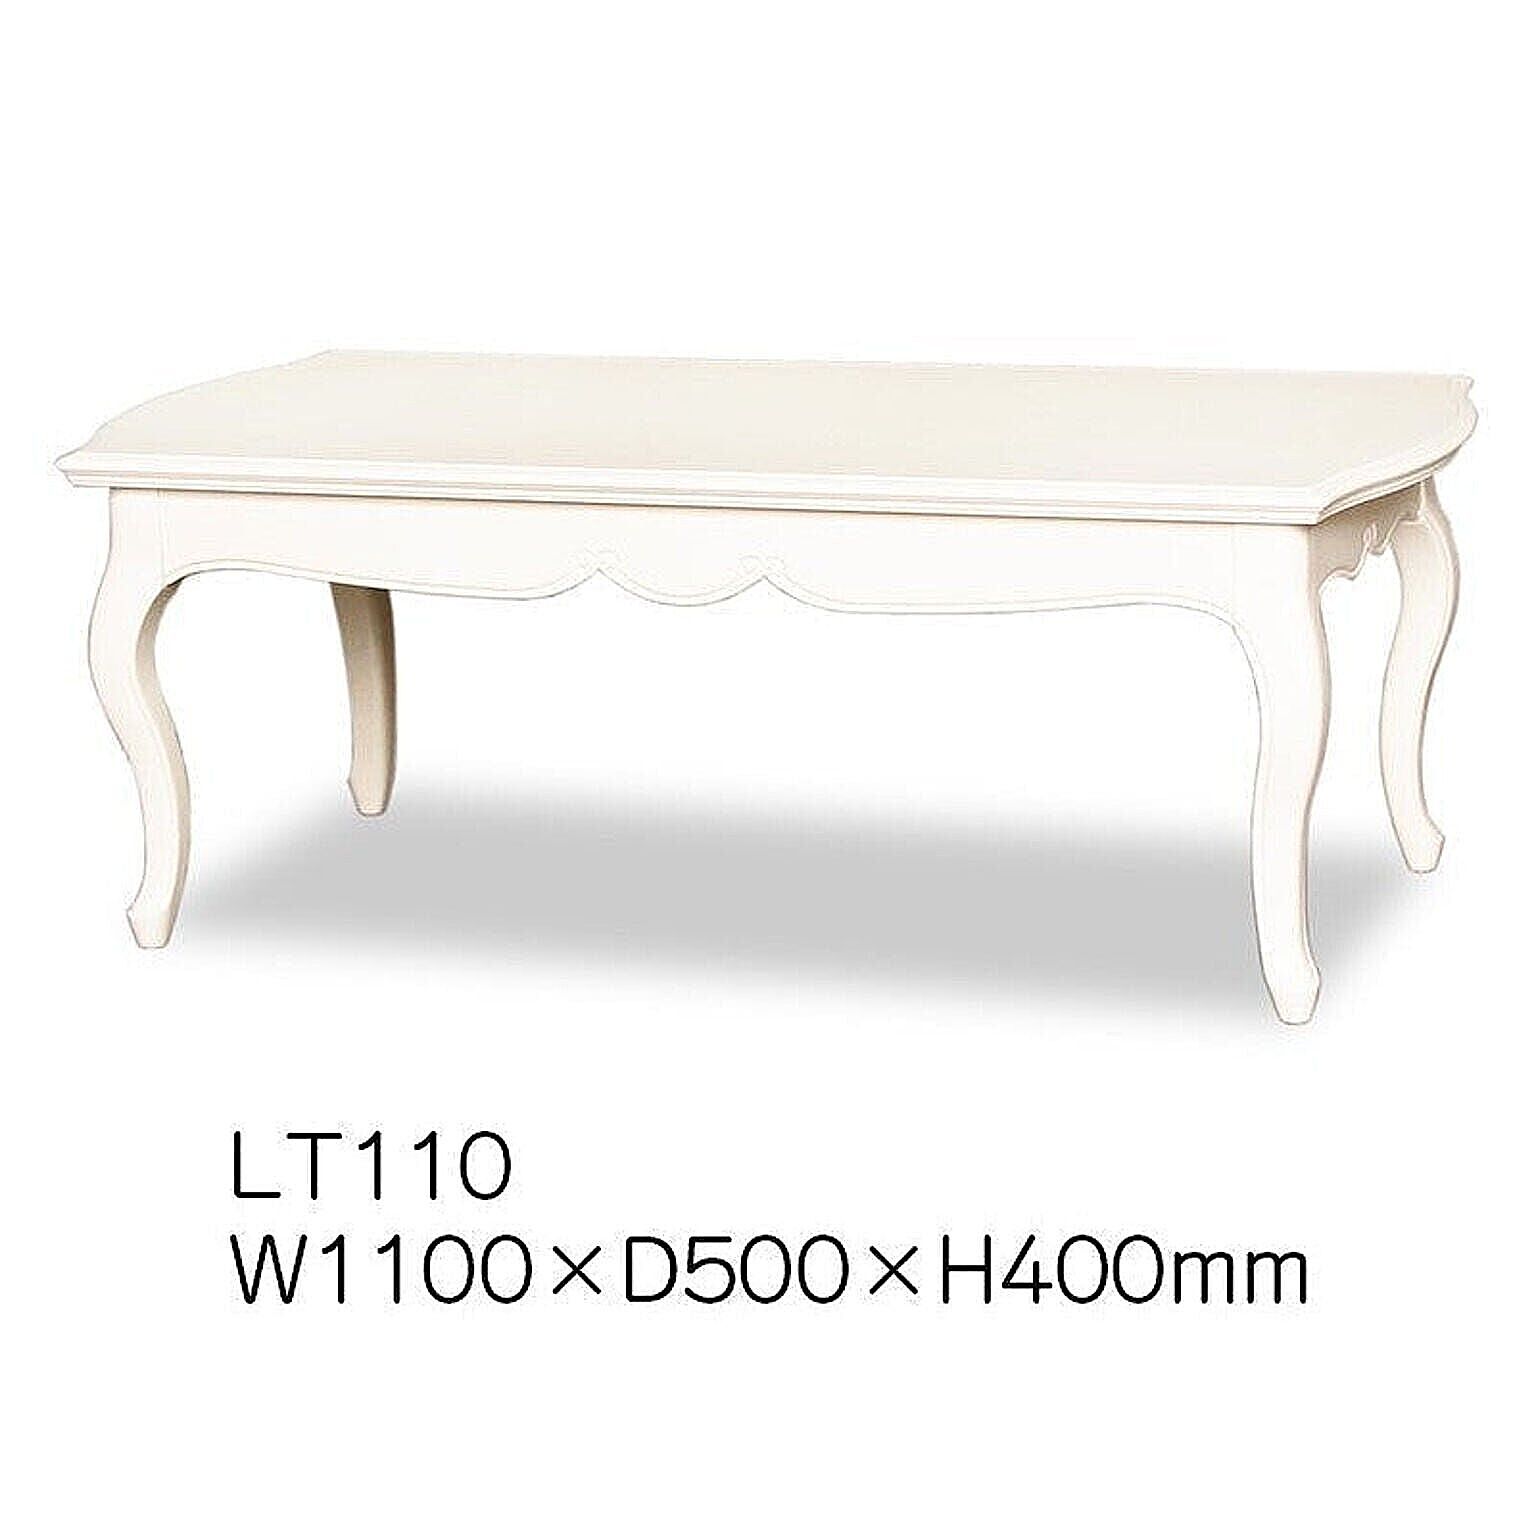 東海家具 フルールWH リビングテーブル LT110 ホワイトウォッシュ